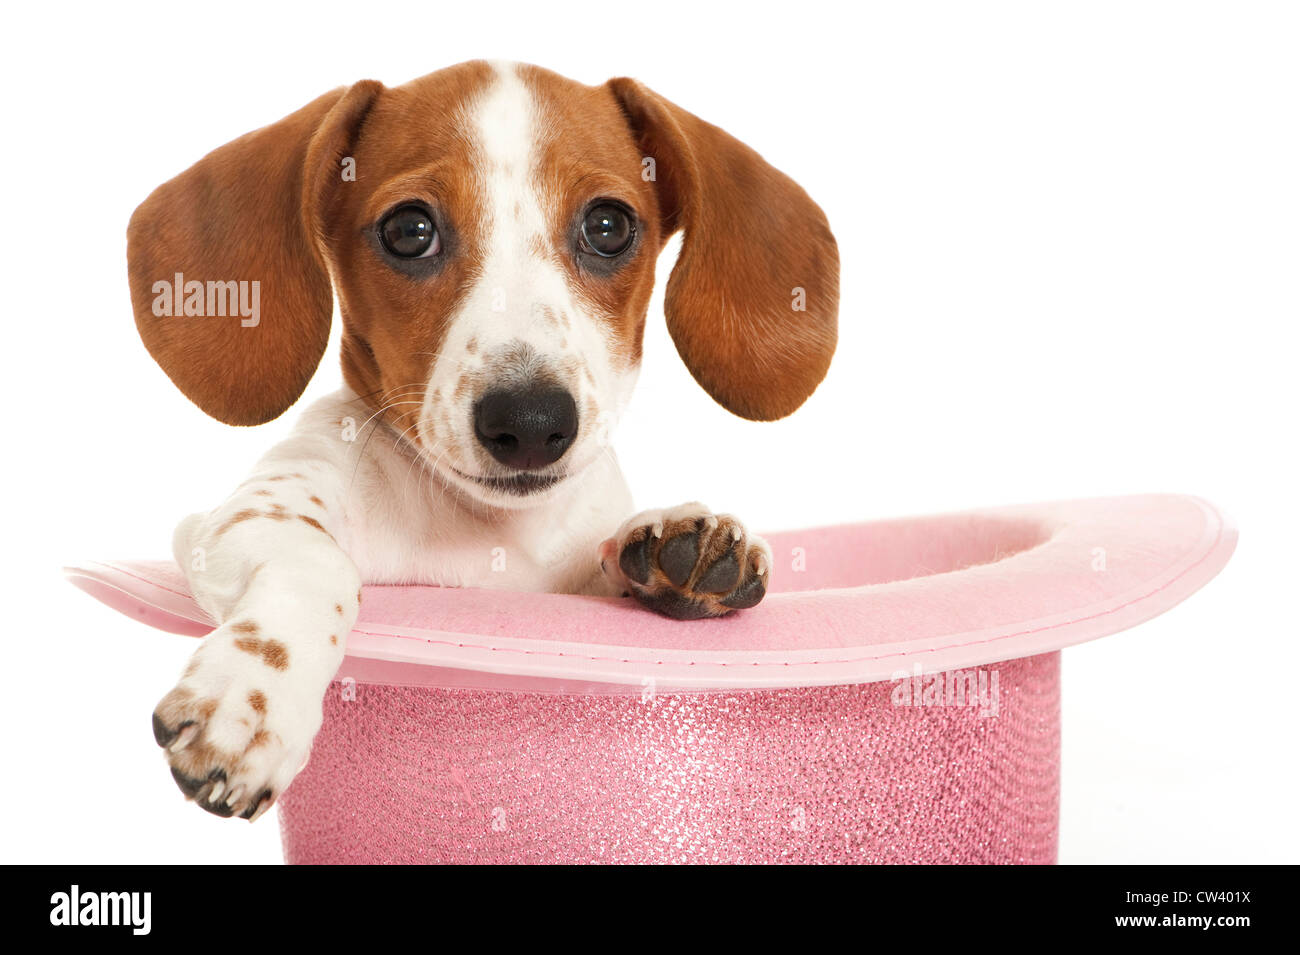 Bassotto. Buon pezzati puppy in un cappello rosa. Studio Immagine contro uno sfondo bianco Foto Stock